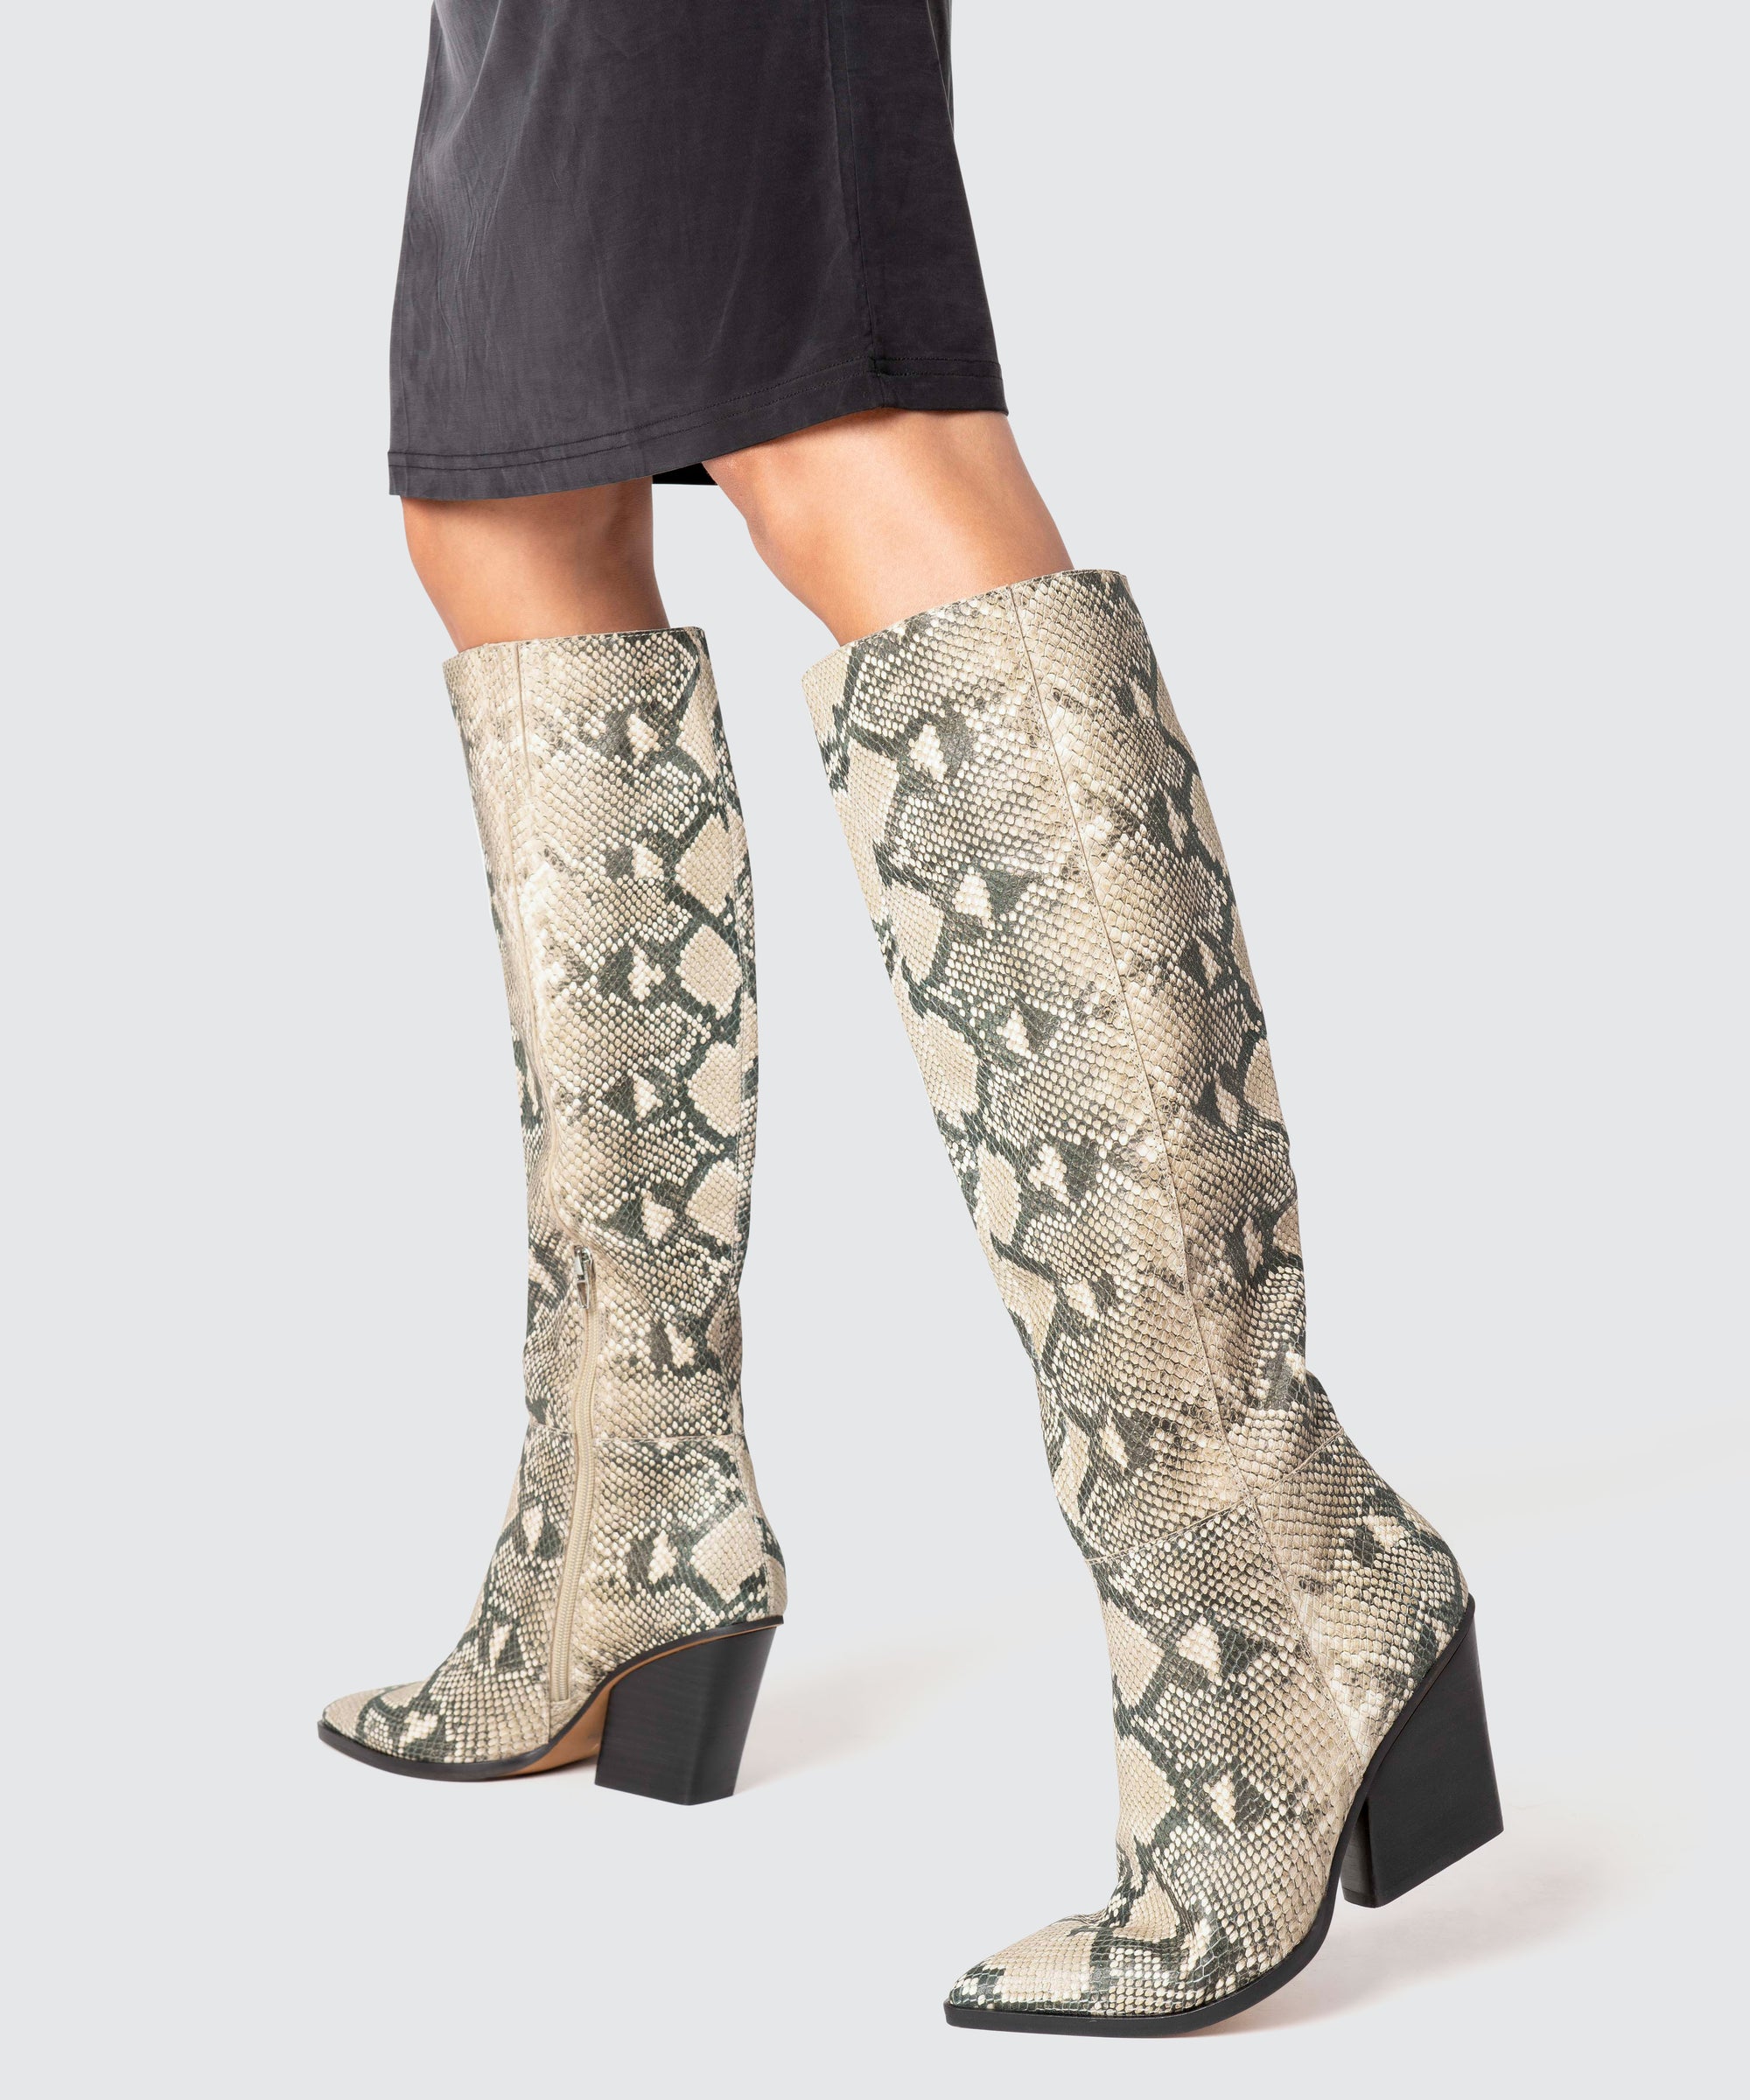 snake calf boots